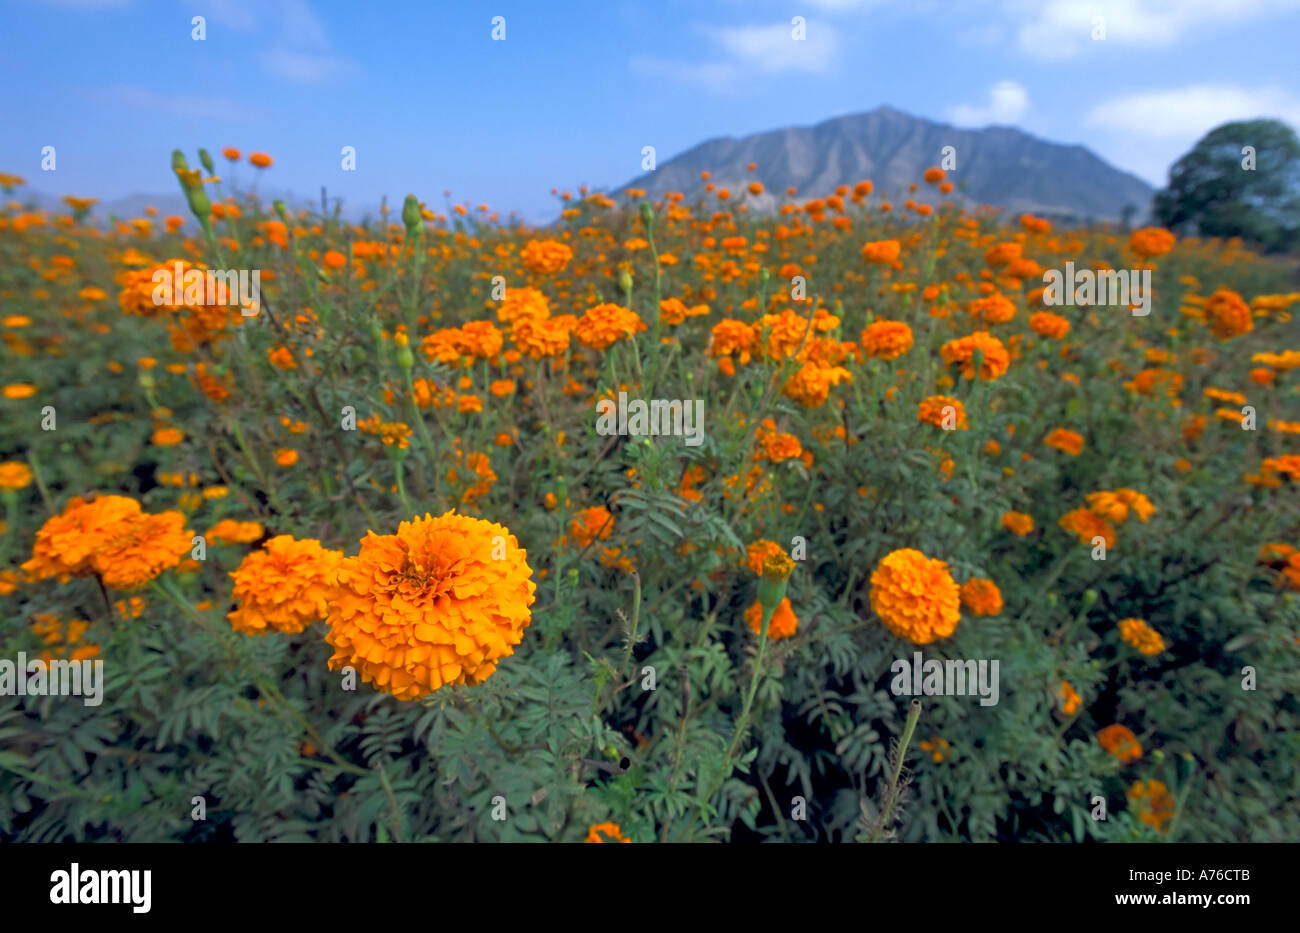 A chiudere un ampio angolo di visione di arancio Le calendule (tagetes) che cresce in un campo. Foto Stock